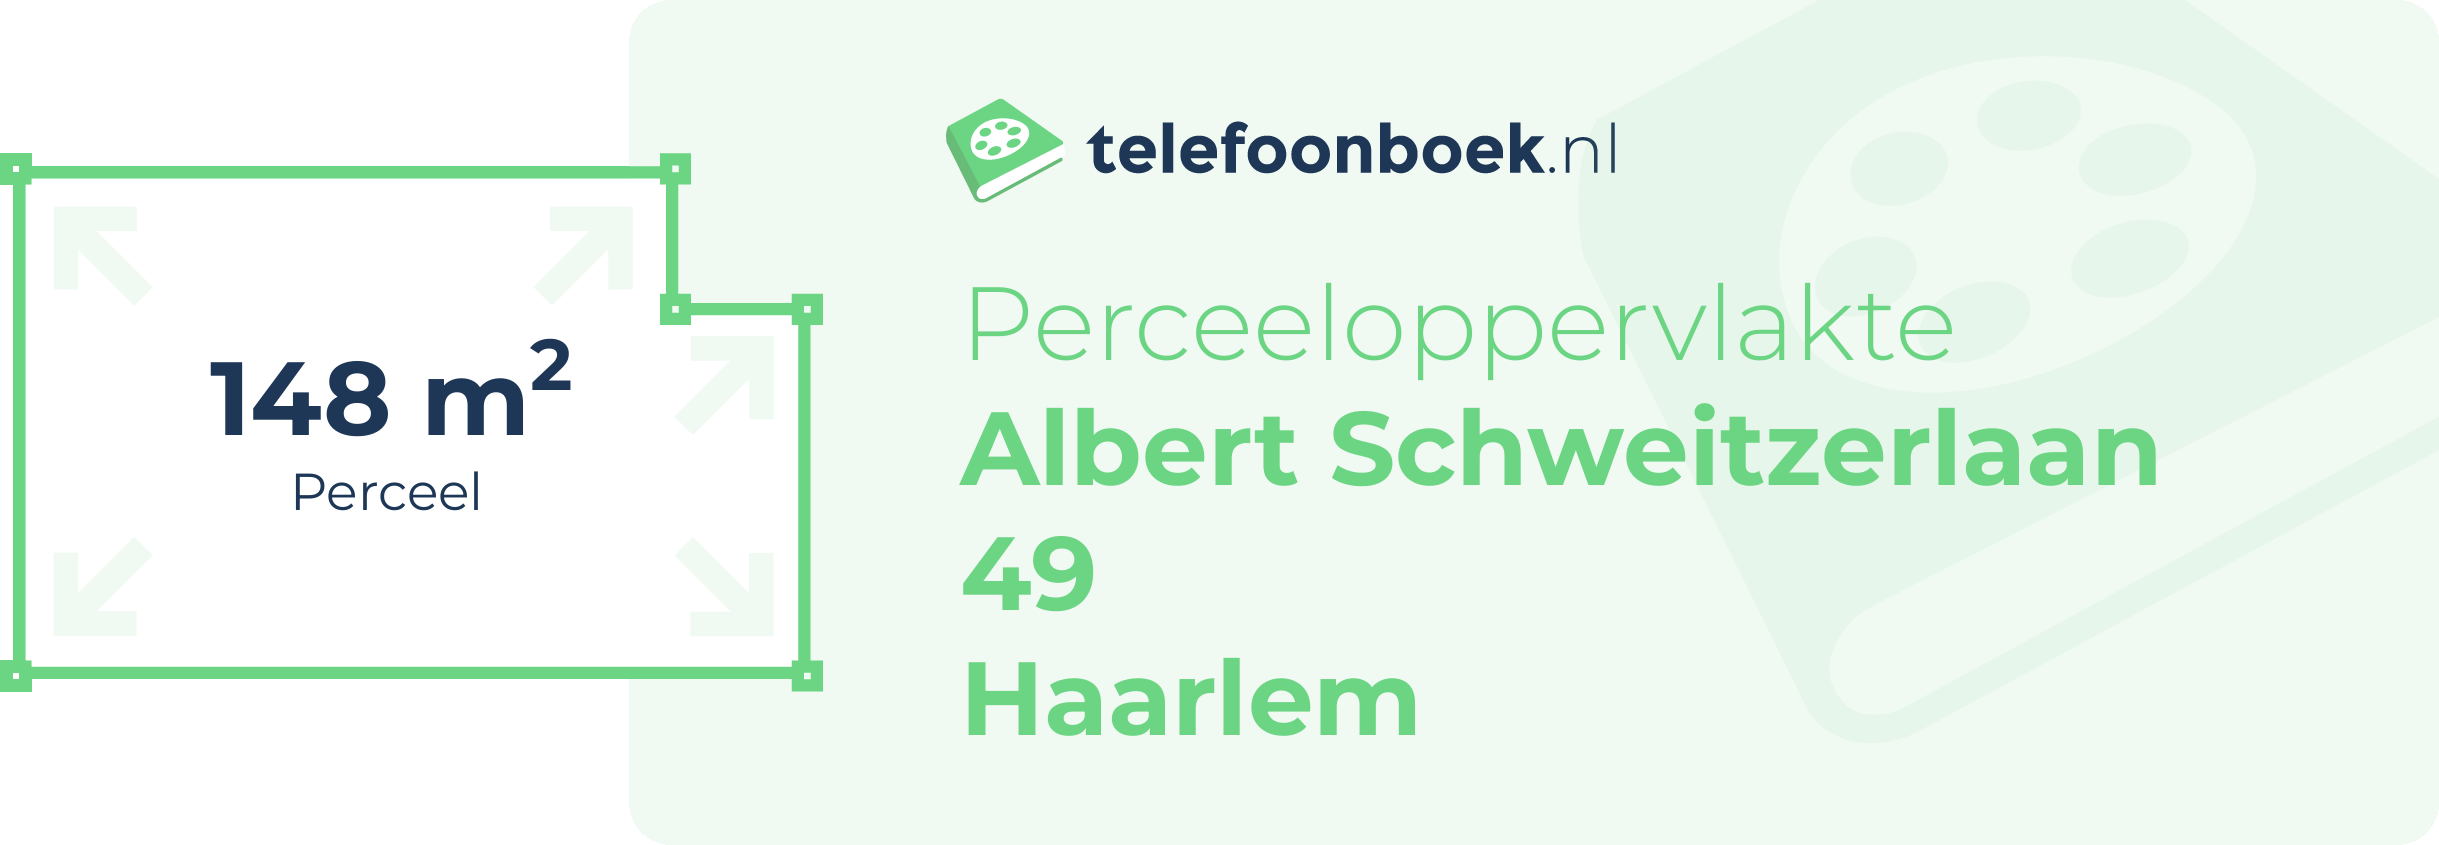 Perceeloppervlakte Albert Schweitzerlaan 49 Haarlem